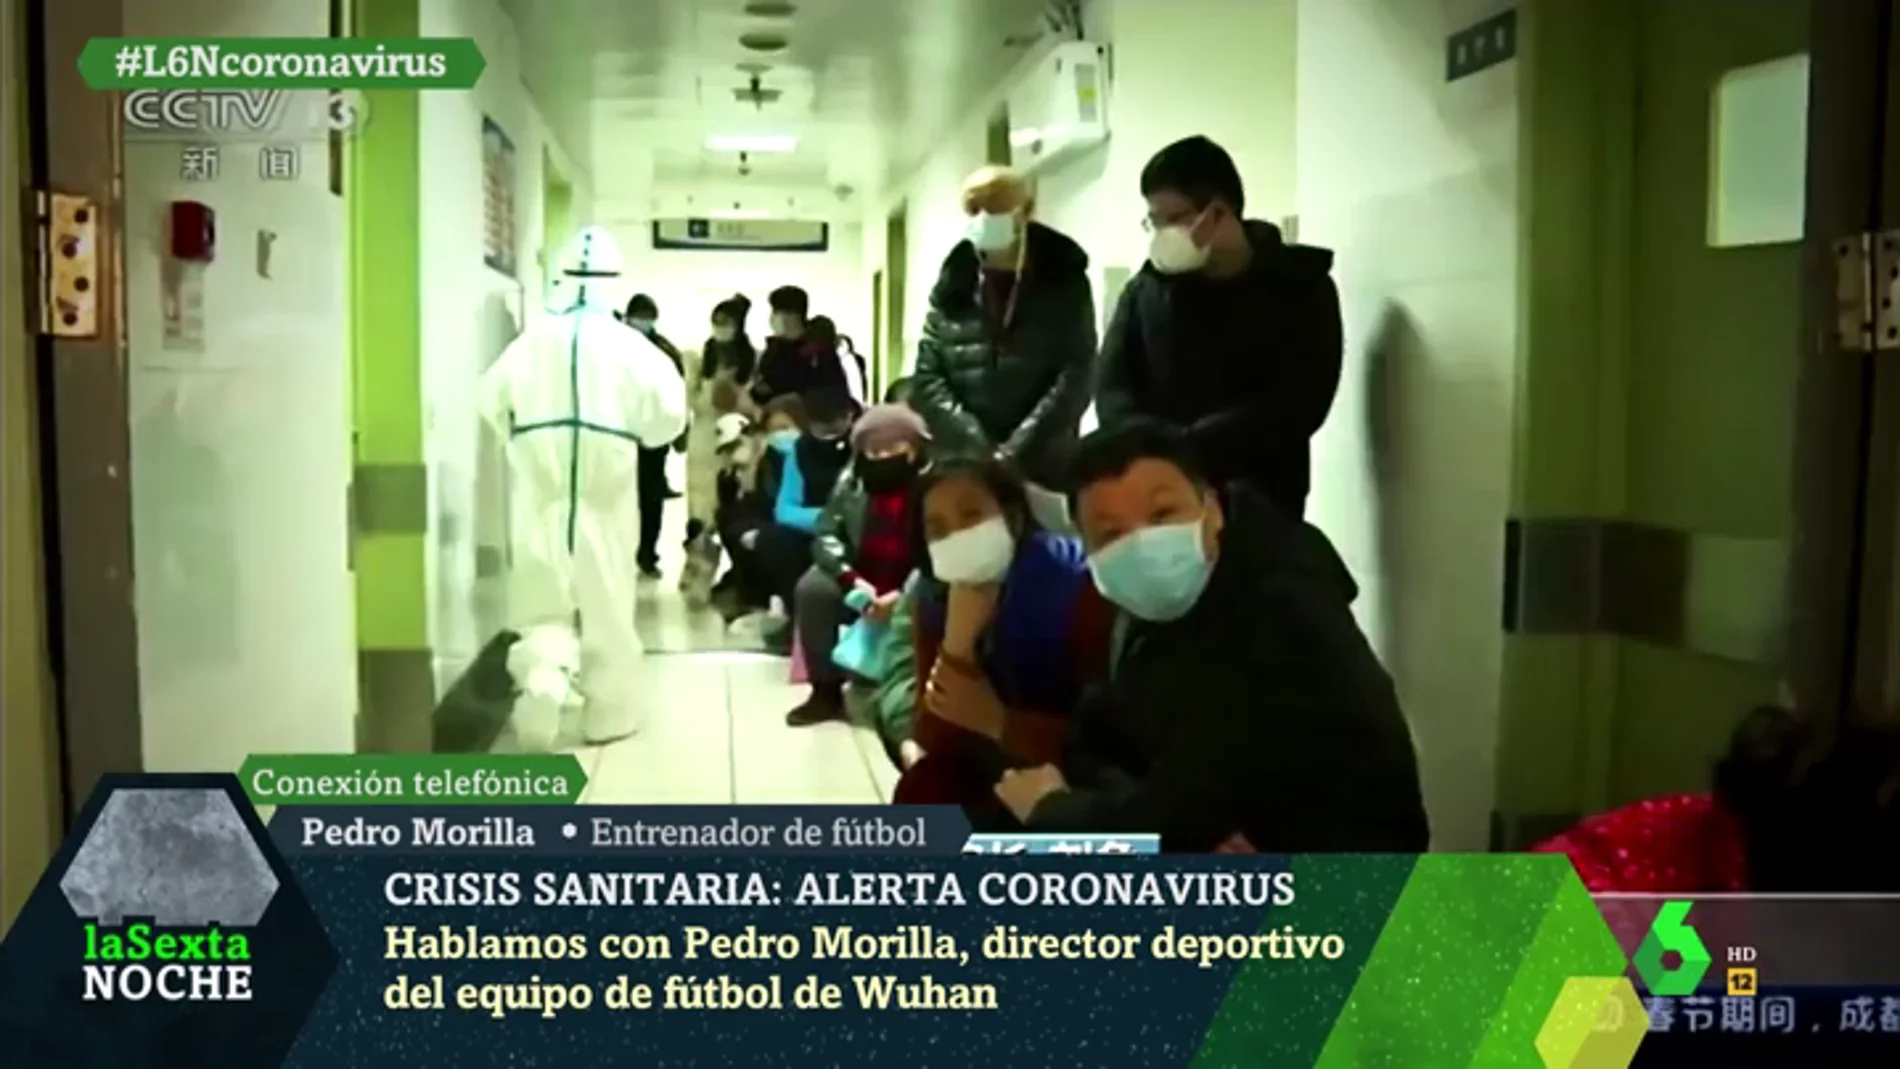 Pedro Morilla, español atrapado en Wuhan por el coronavirus: "Han bloqueado la ciudad por tierra y por aire"